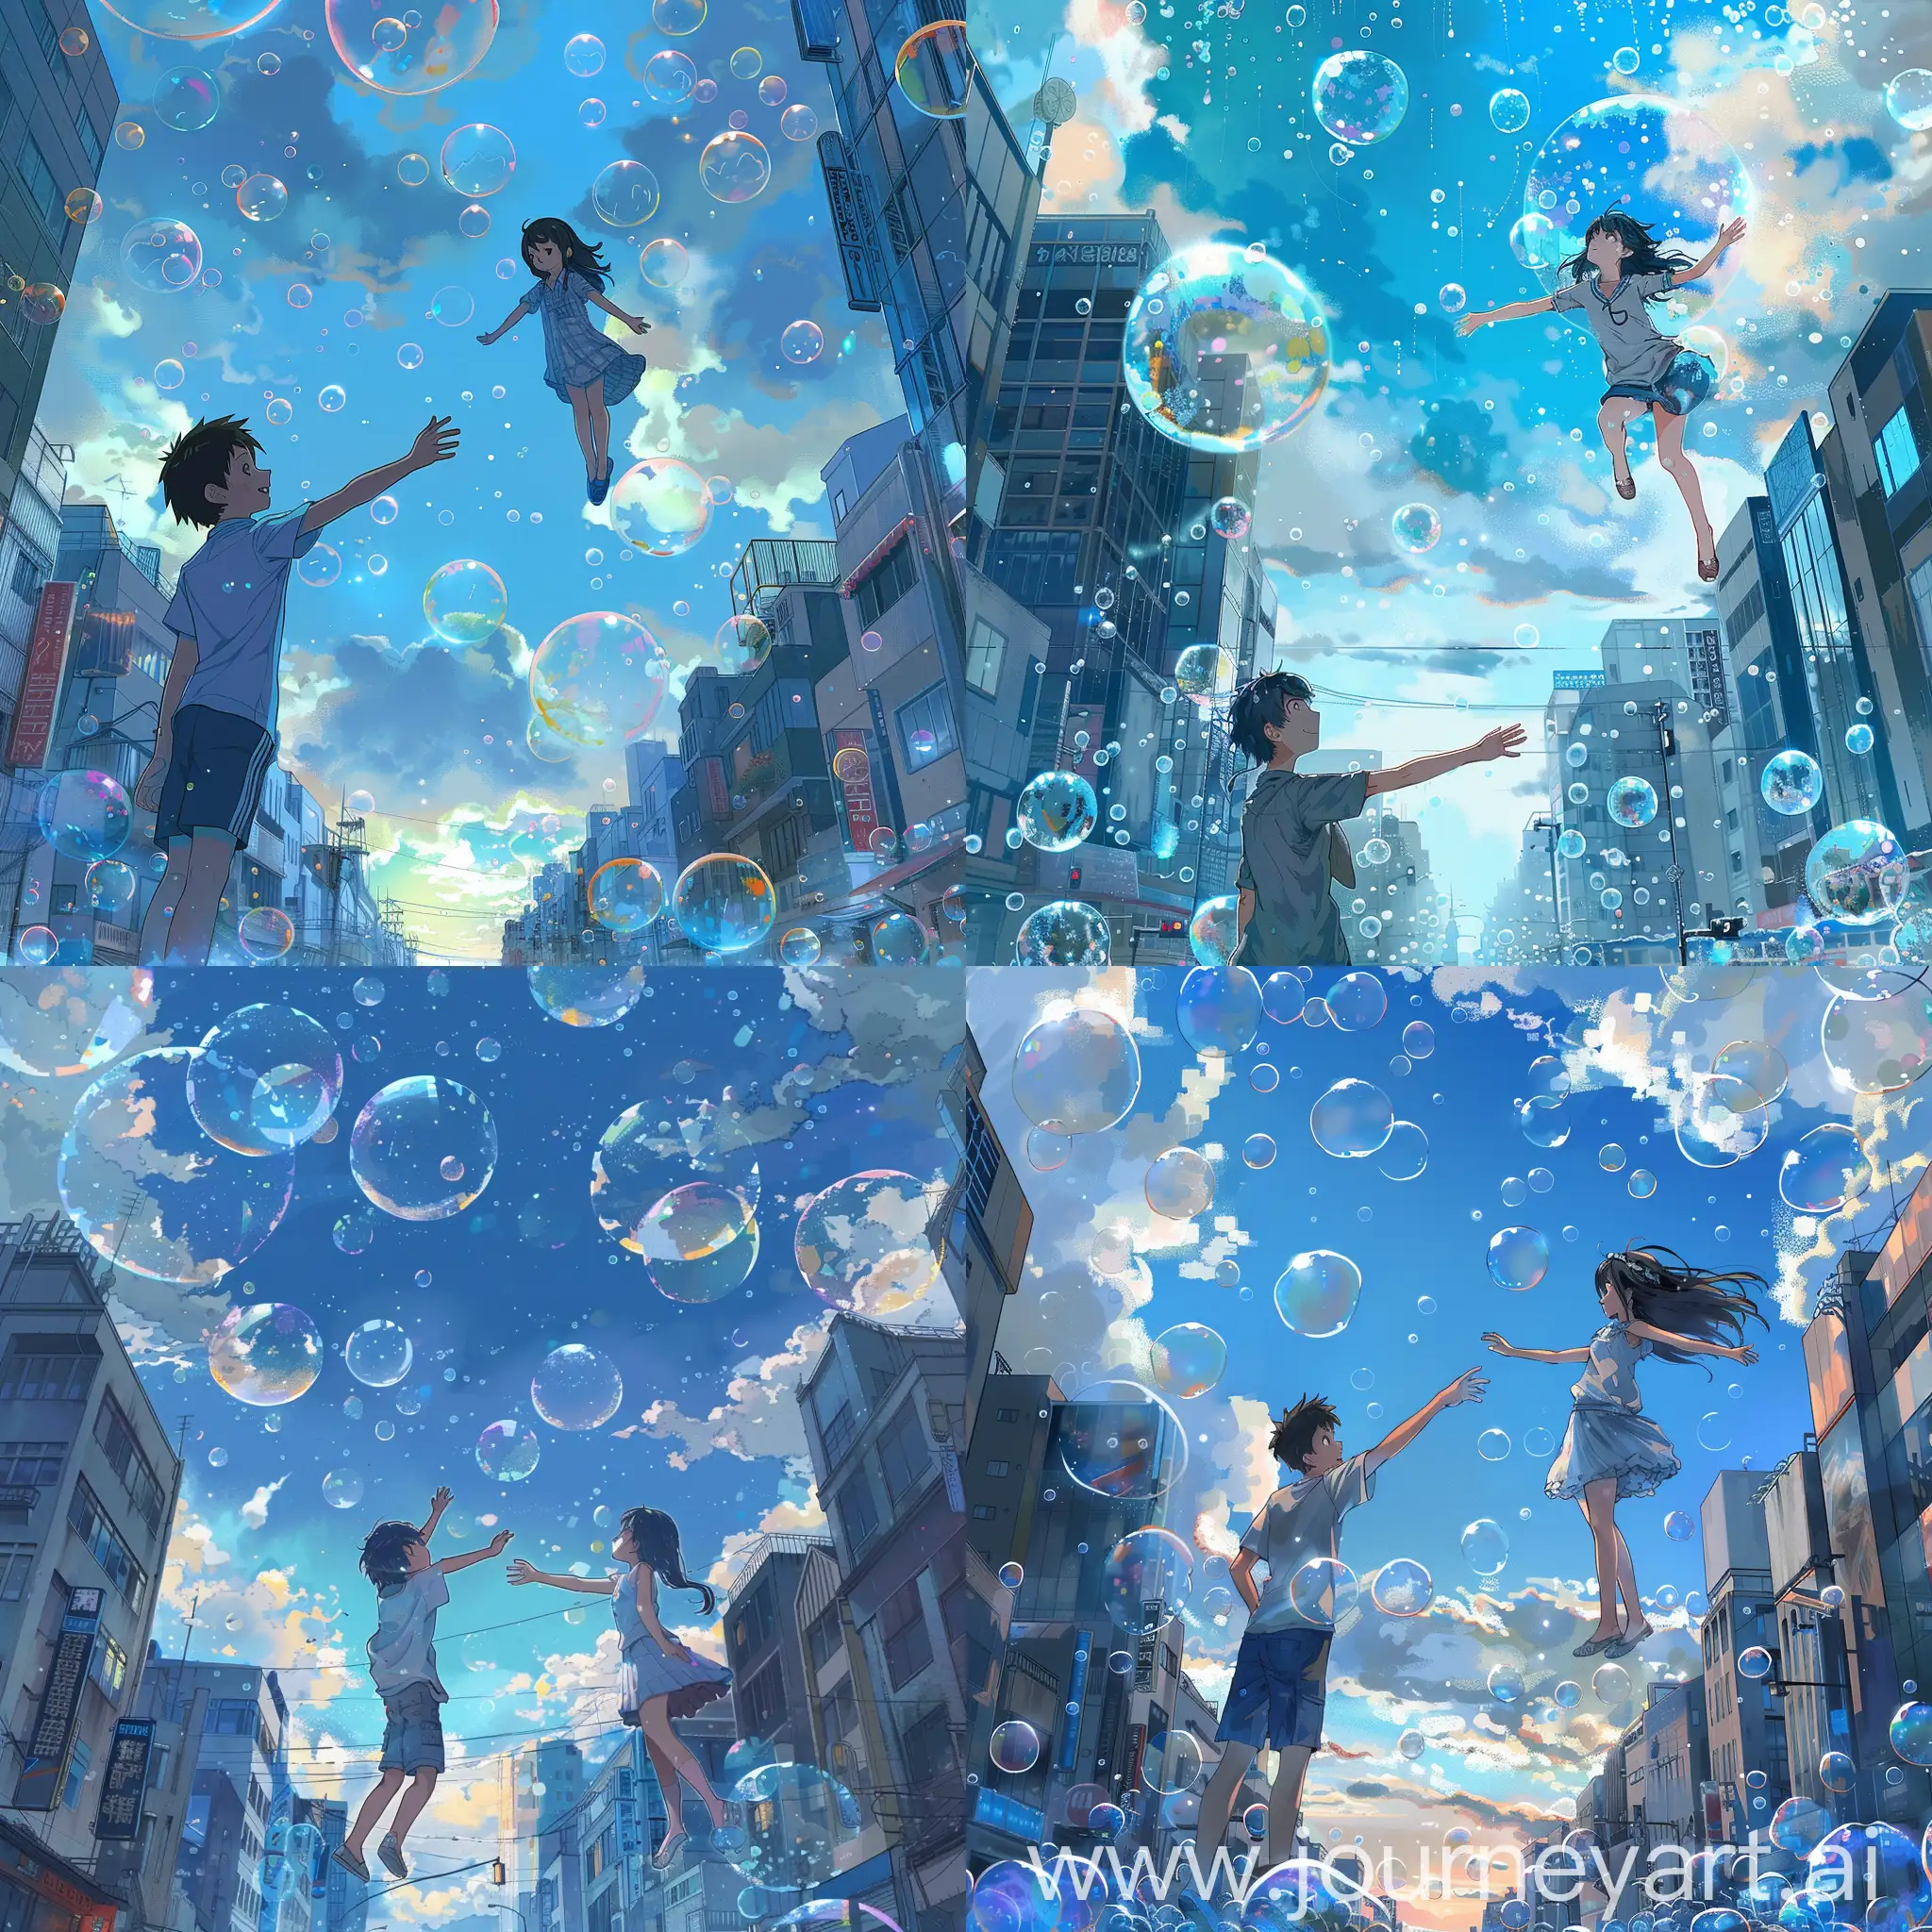 Hina-and-Hodaka-Floating-in-Anime-Sky-Amid-City-Bubbles